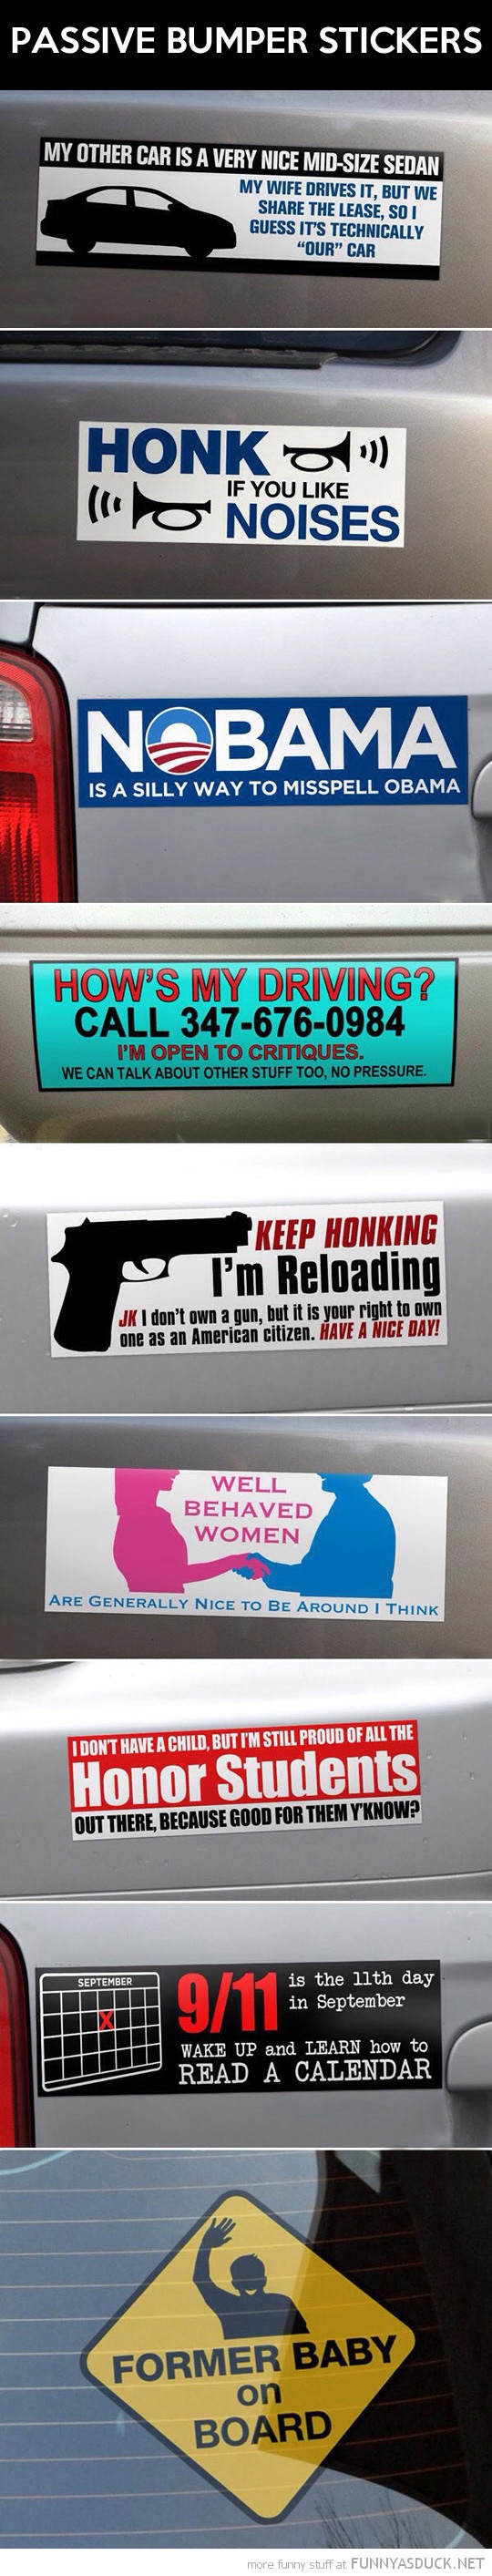 Passive Bumper Stickers